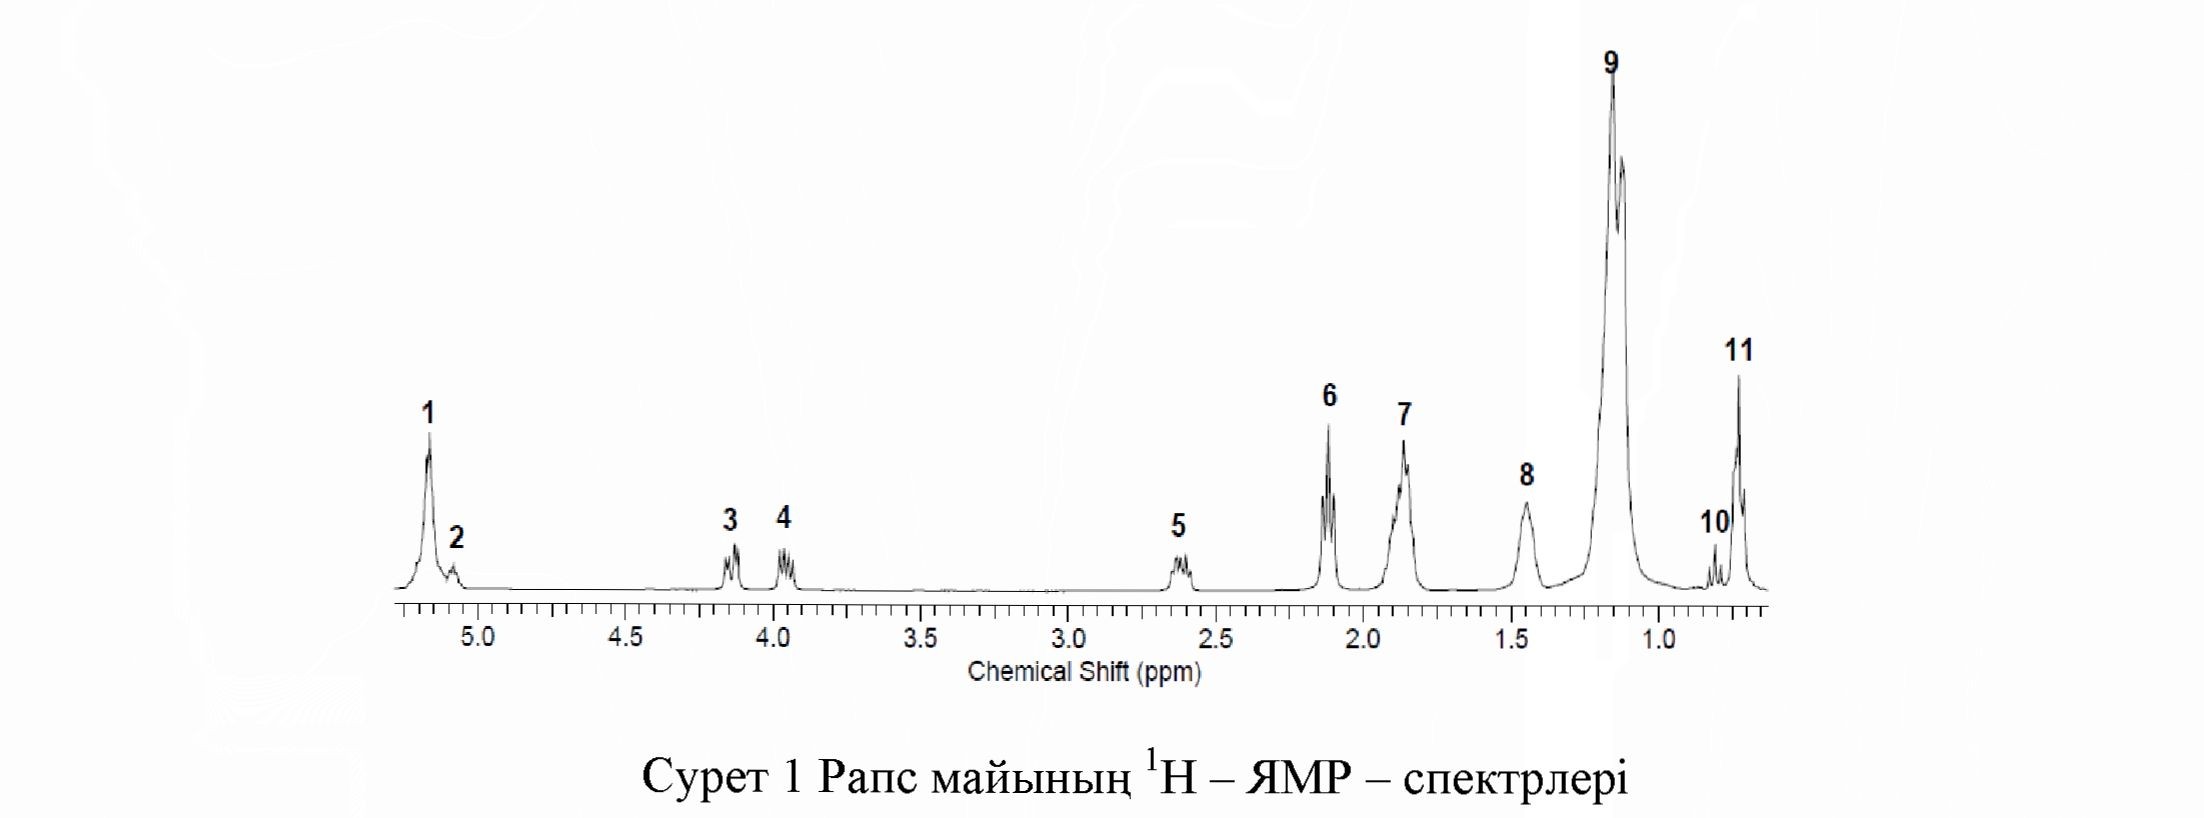 Рапс майын алу және оның қүрамын ямр - спектроскопия әдісімен зерттеу